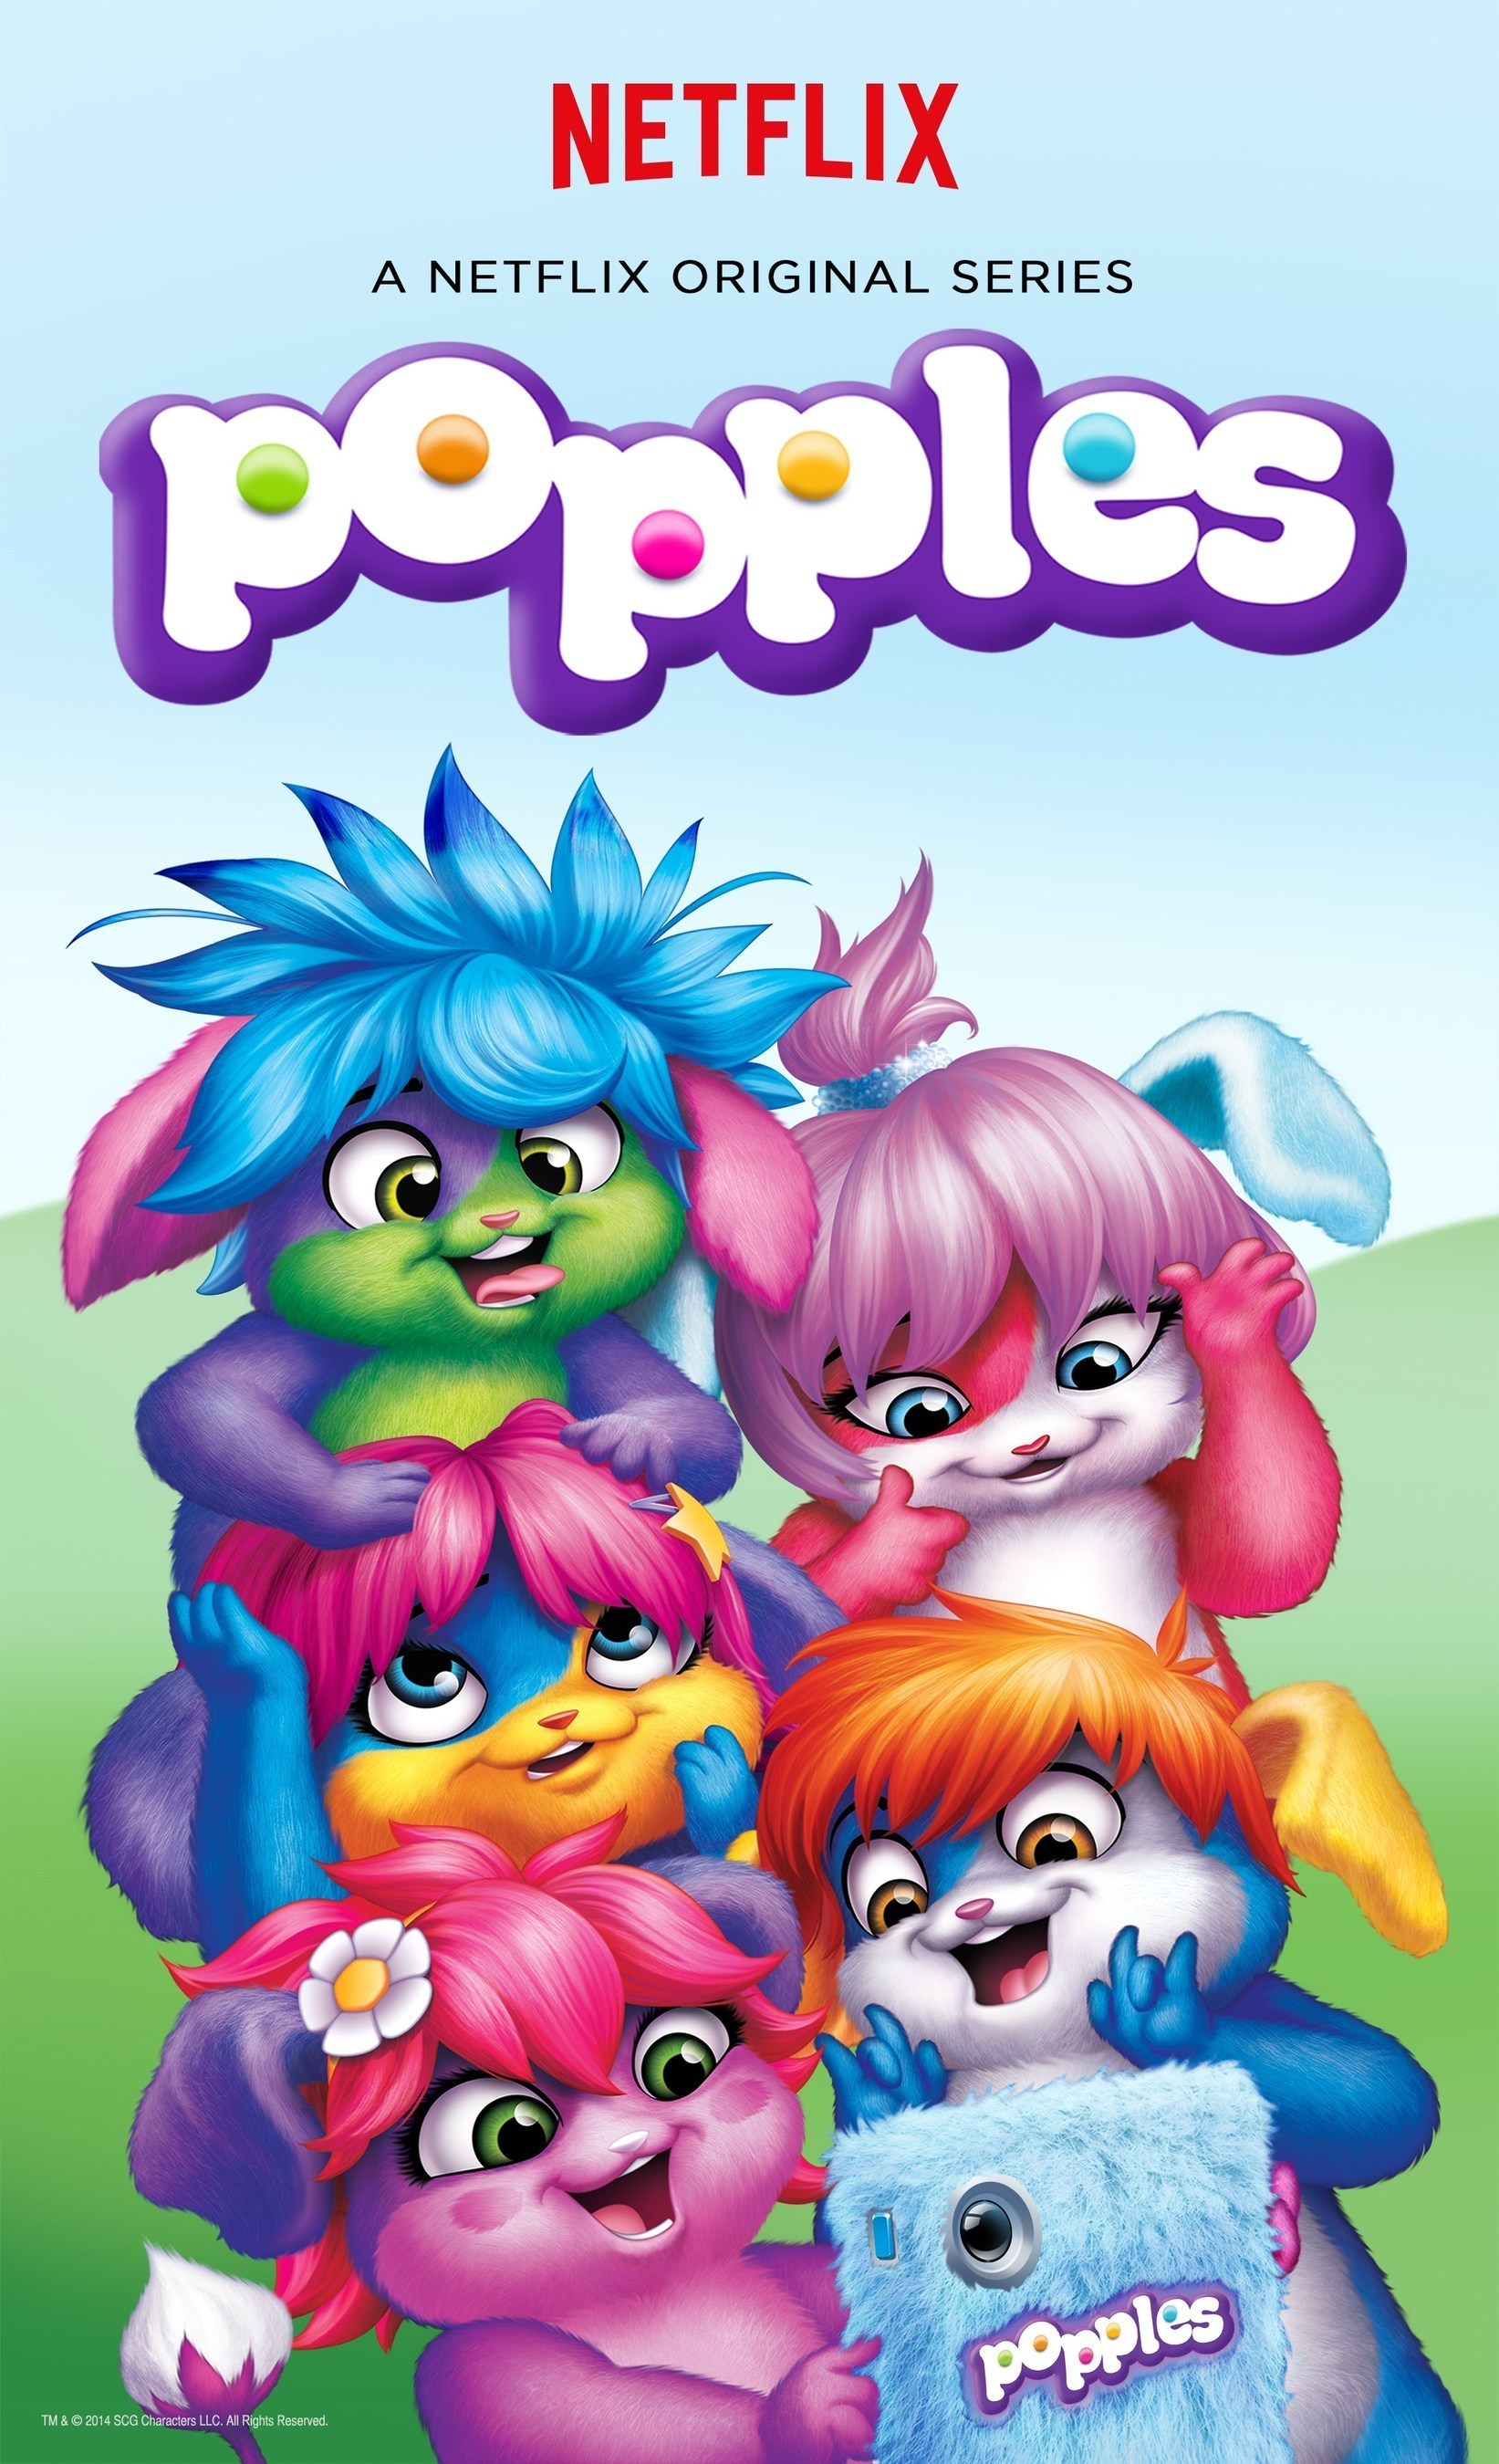 NETFLIX AND SABAN BRANDS ANNOUNCE "POPPLES", A NEW ORIGINAL SERIES
FOR KIDS (PRNewsFoto/Netflix, Inc.)